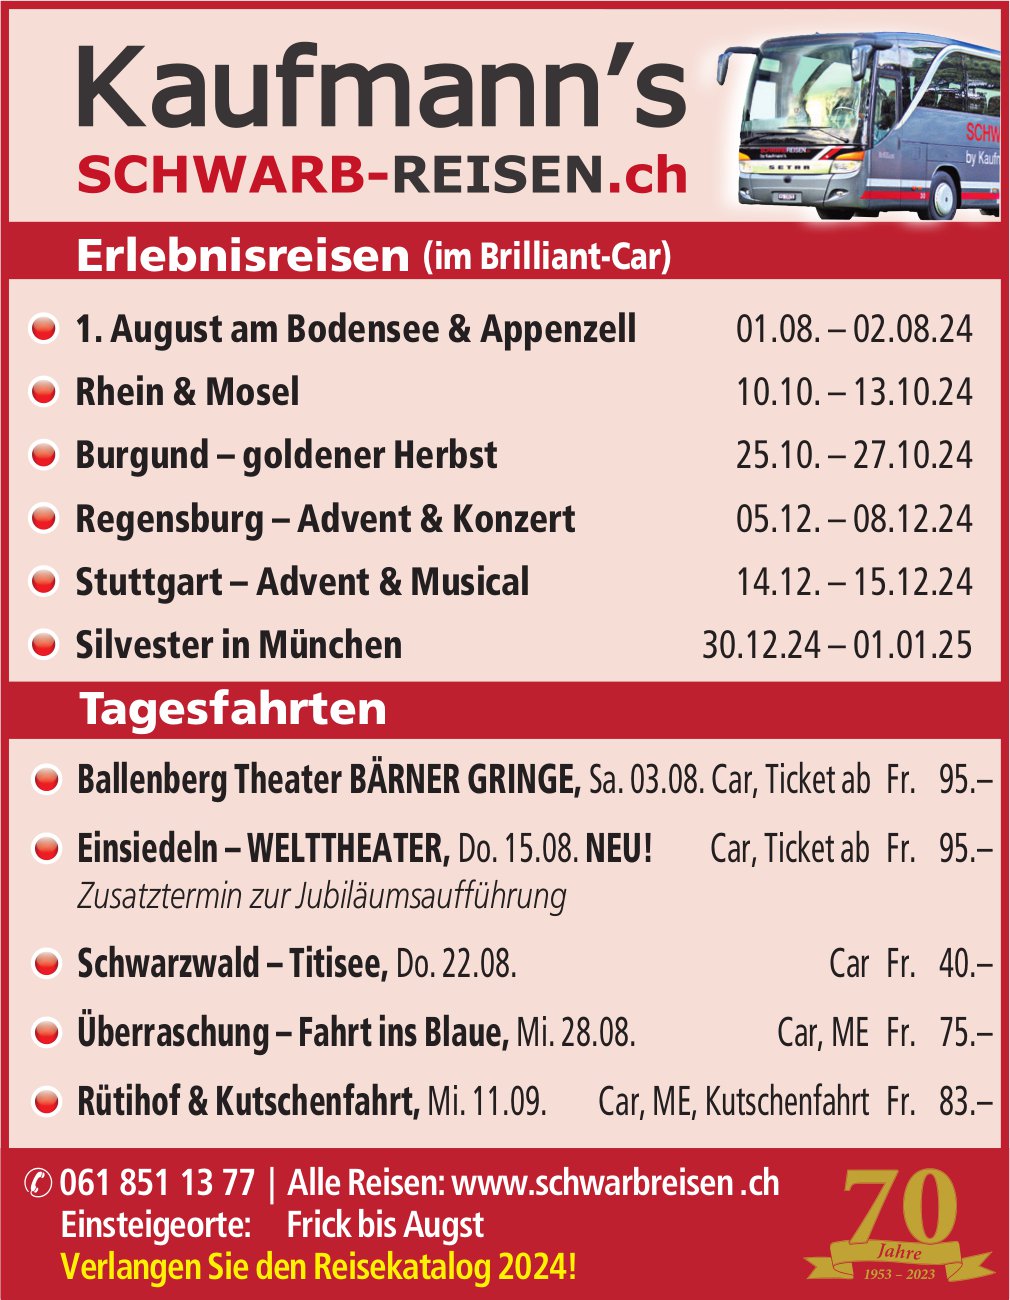 Kaufmann's Schwarb-Reisen, Reiseprogramm